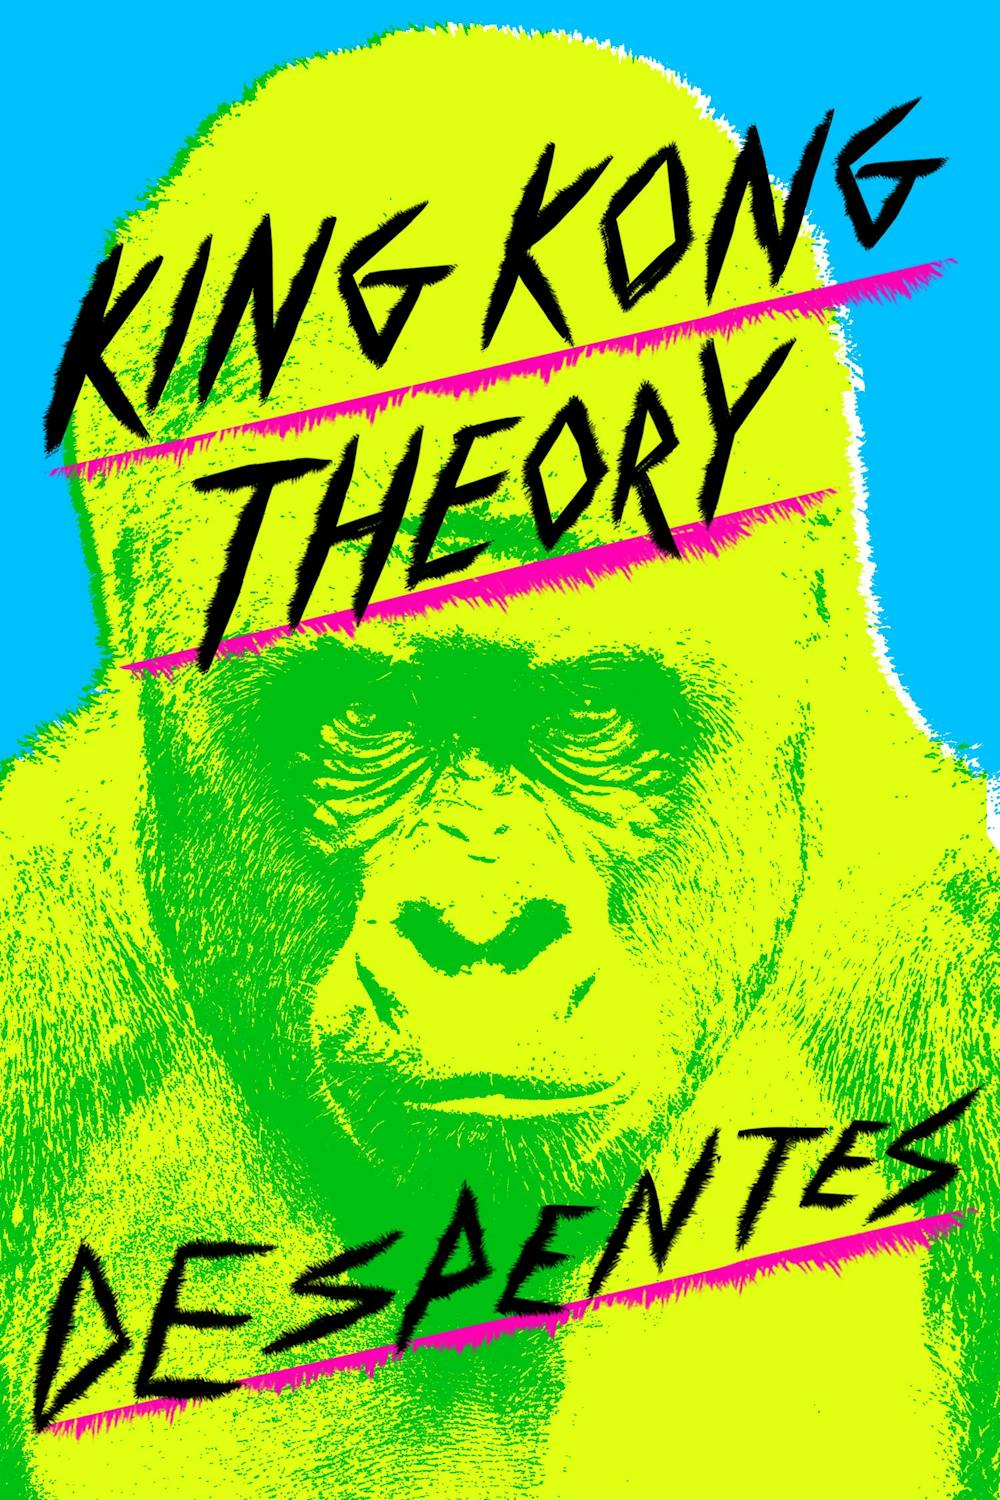 Teen Girl Sucks Cock - King Kong Theory - Tradebook for Courses